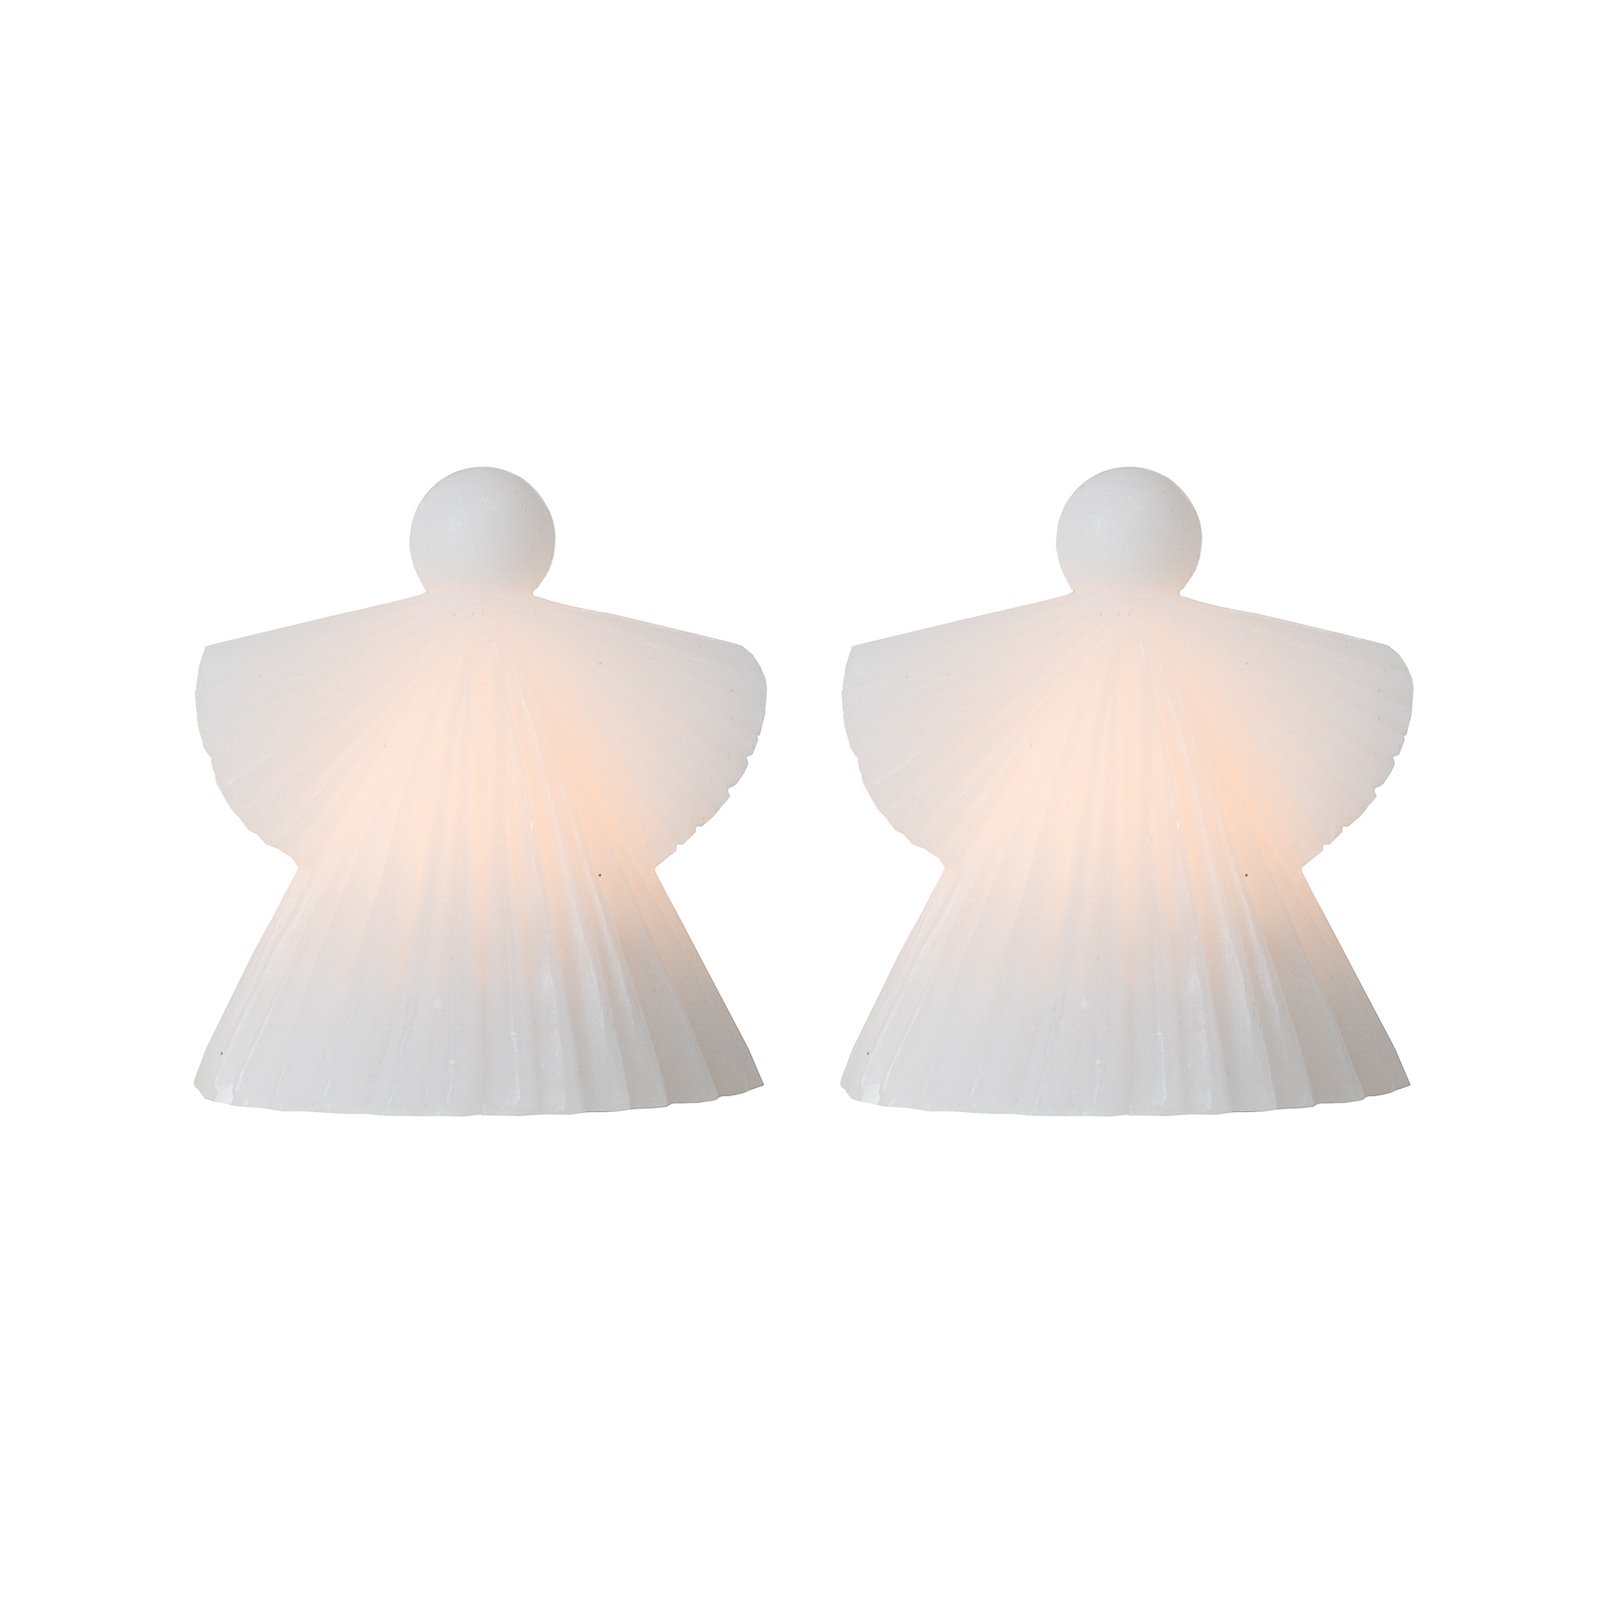 LED διακοσμητικό αγαλματάκι Asta, άγγελος, λευκό κερί, 10cm, σετ των 2